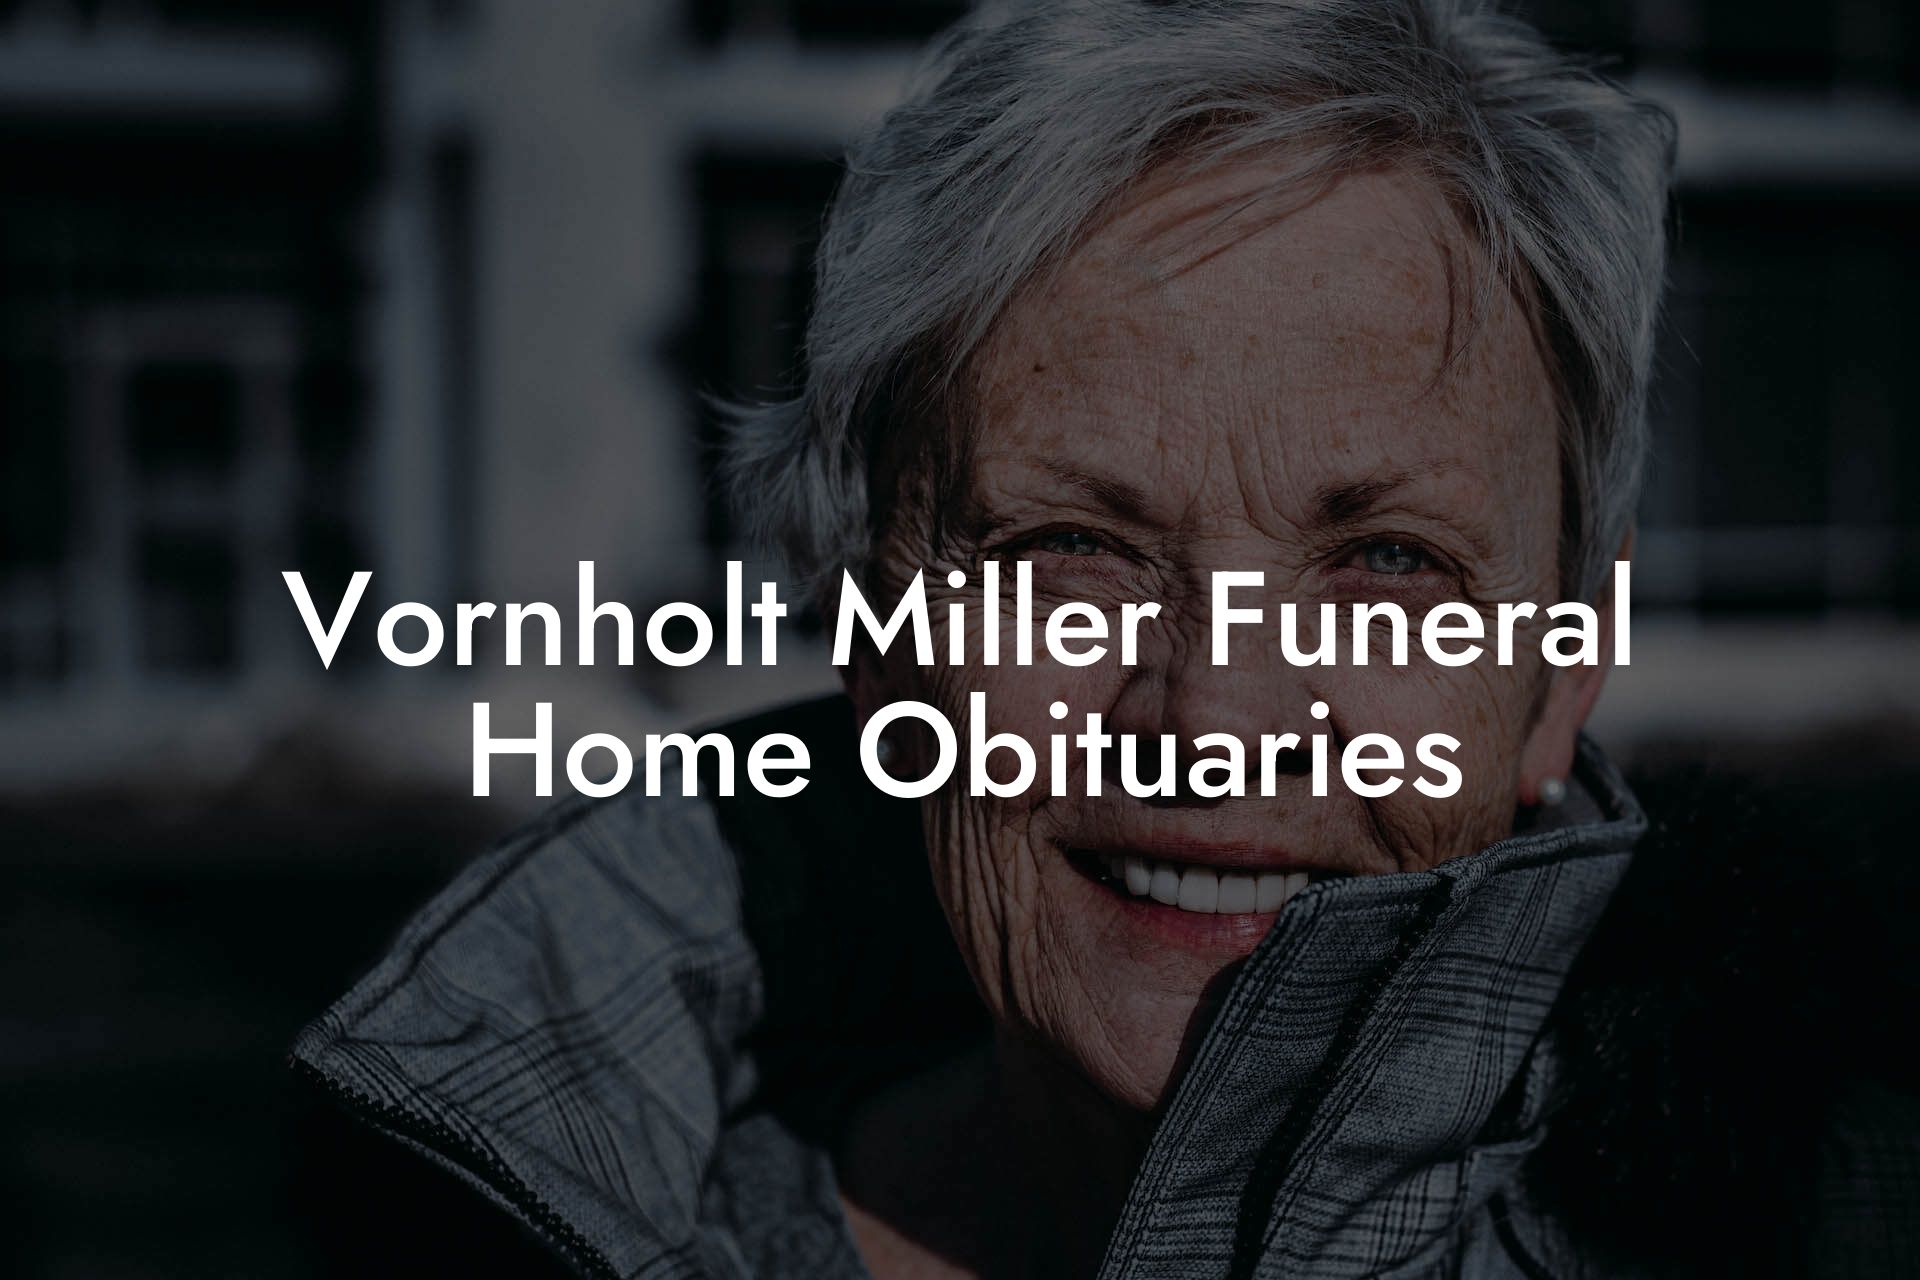 Vornholt Miller Funeral Home Obituaries